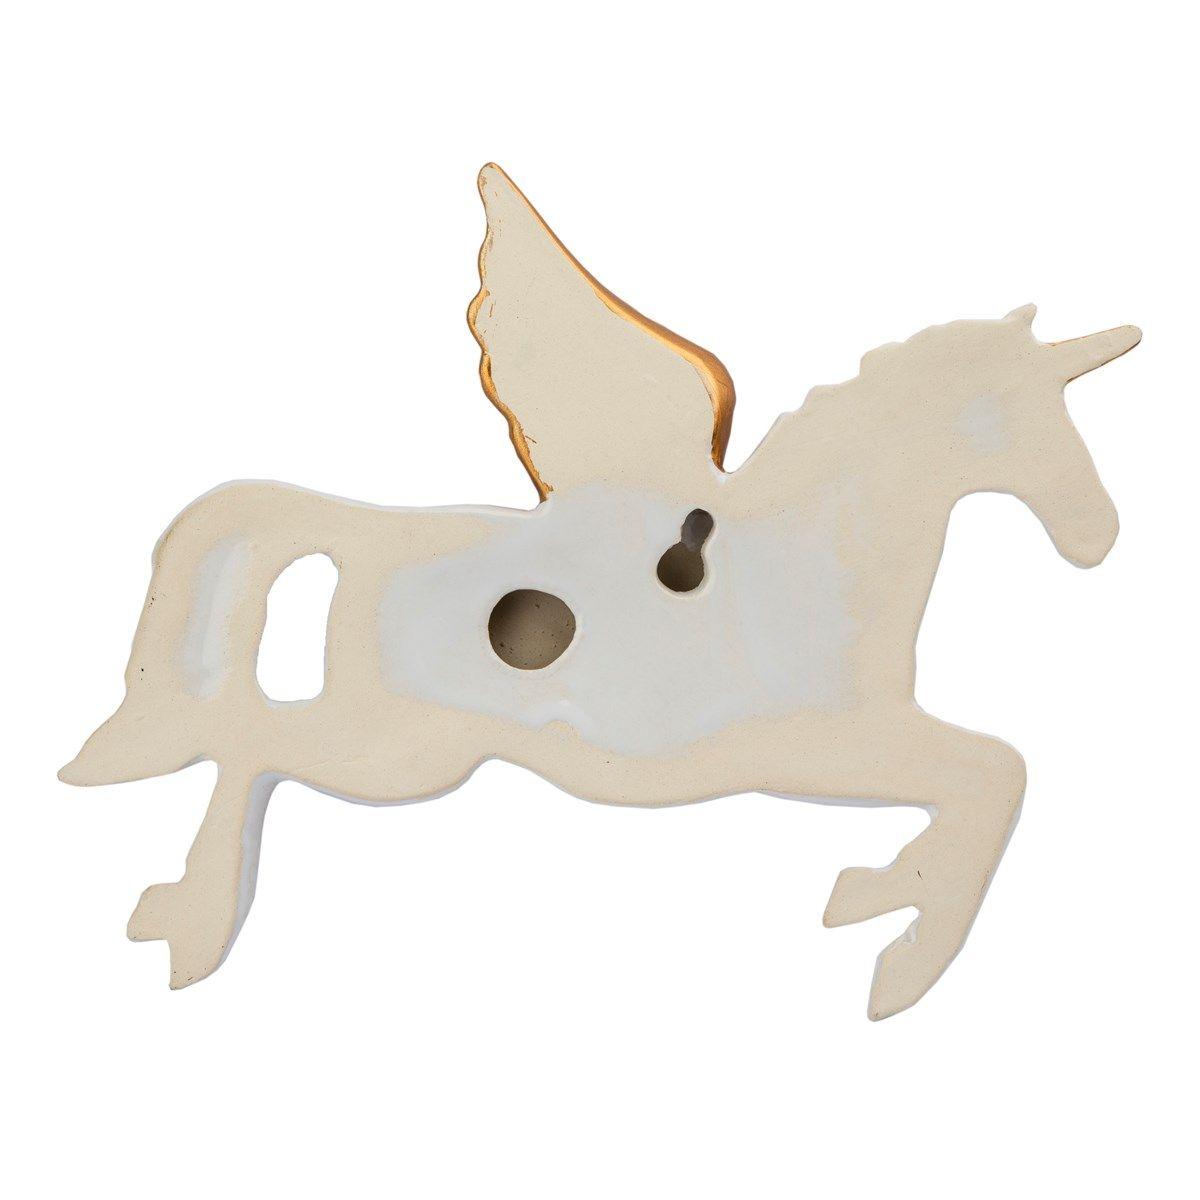 Flying Unicorn Logo - Set of 3 Flying Unicorn Wall Decorations